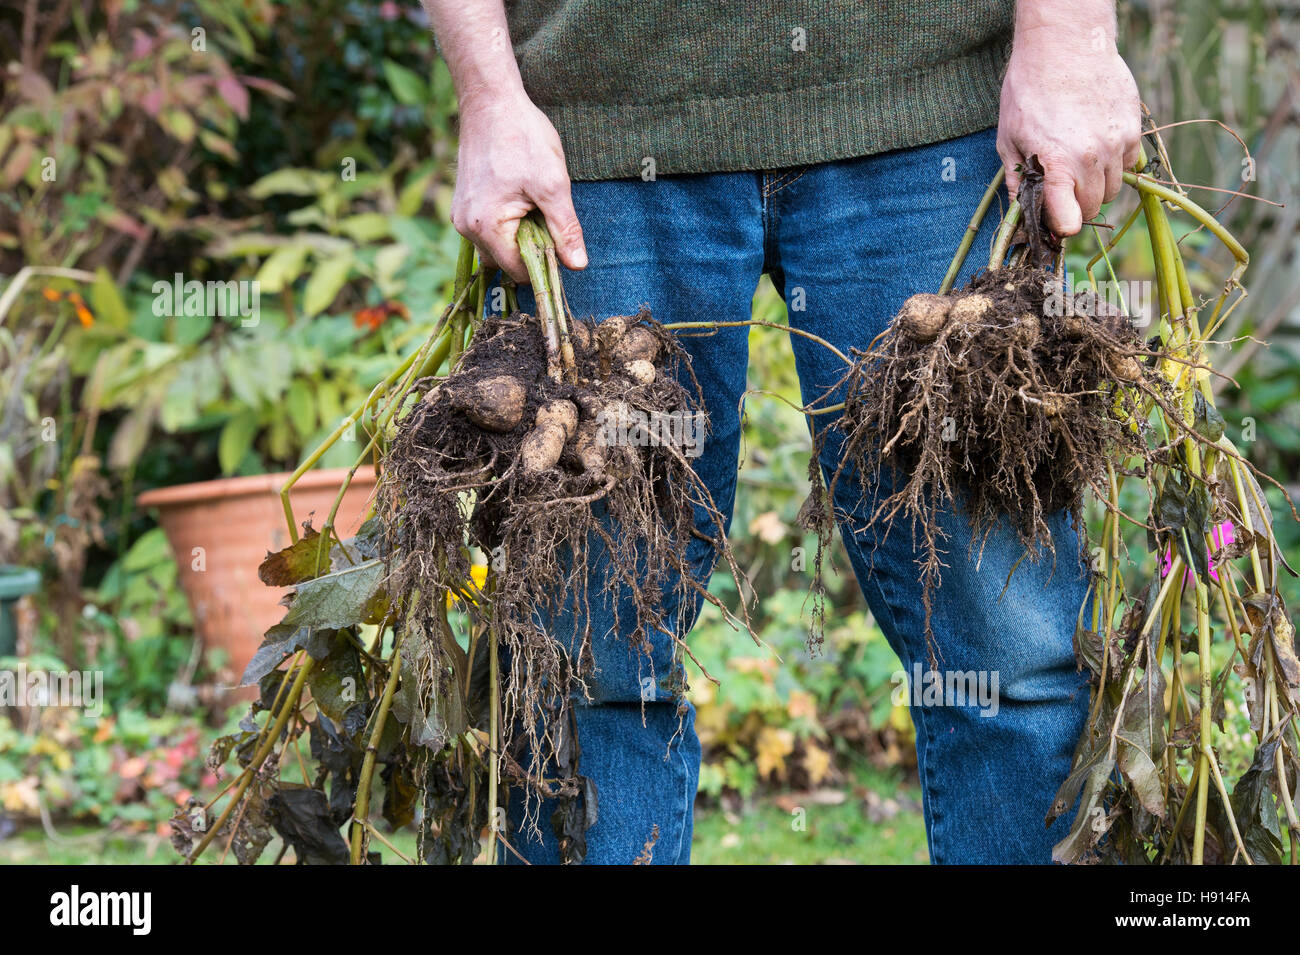 Gardener holding dug up Dahlia flower tubers Stock Photo